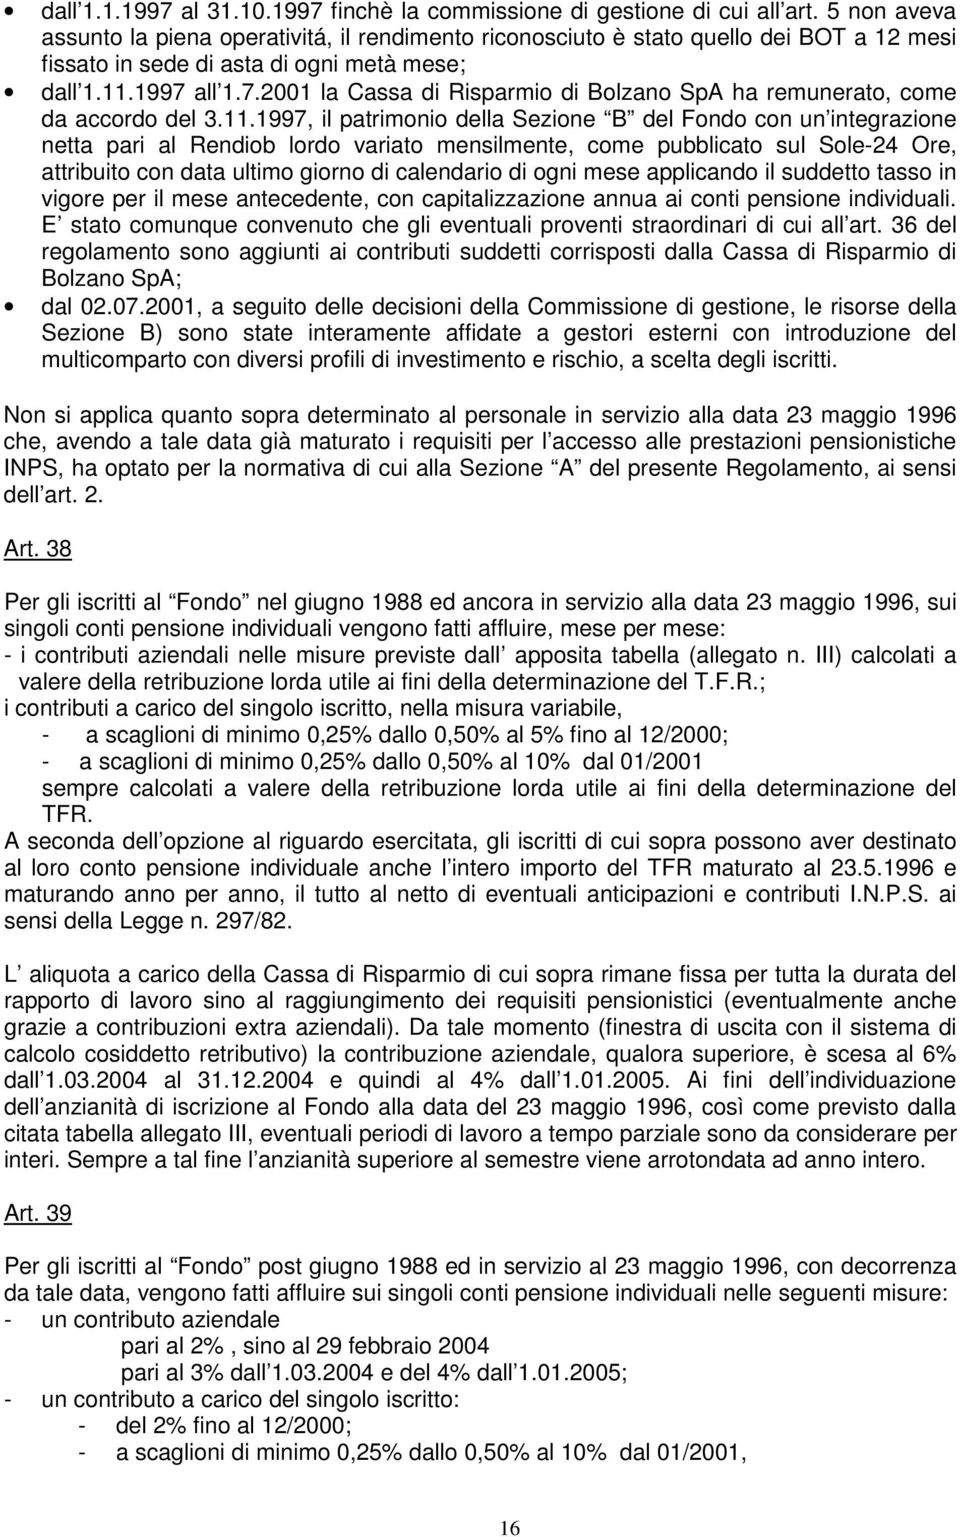 all 1.7.2001 la Cassa di Risparmio di Bolzano SpA ha remunerato, come da accordo del 3.11.